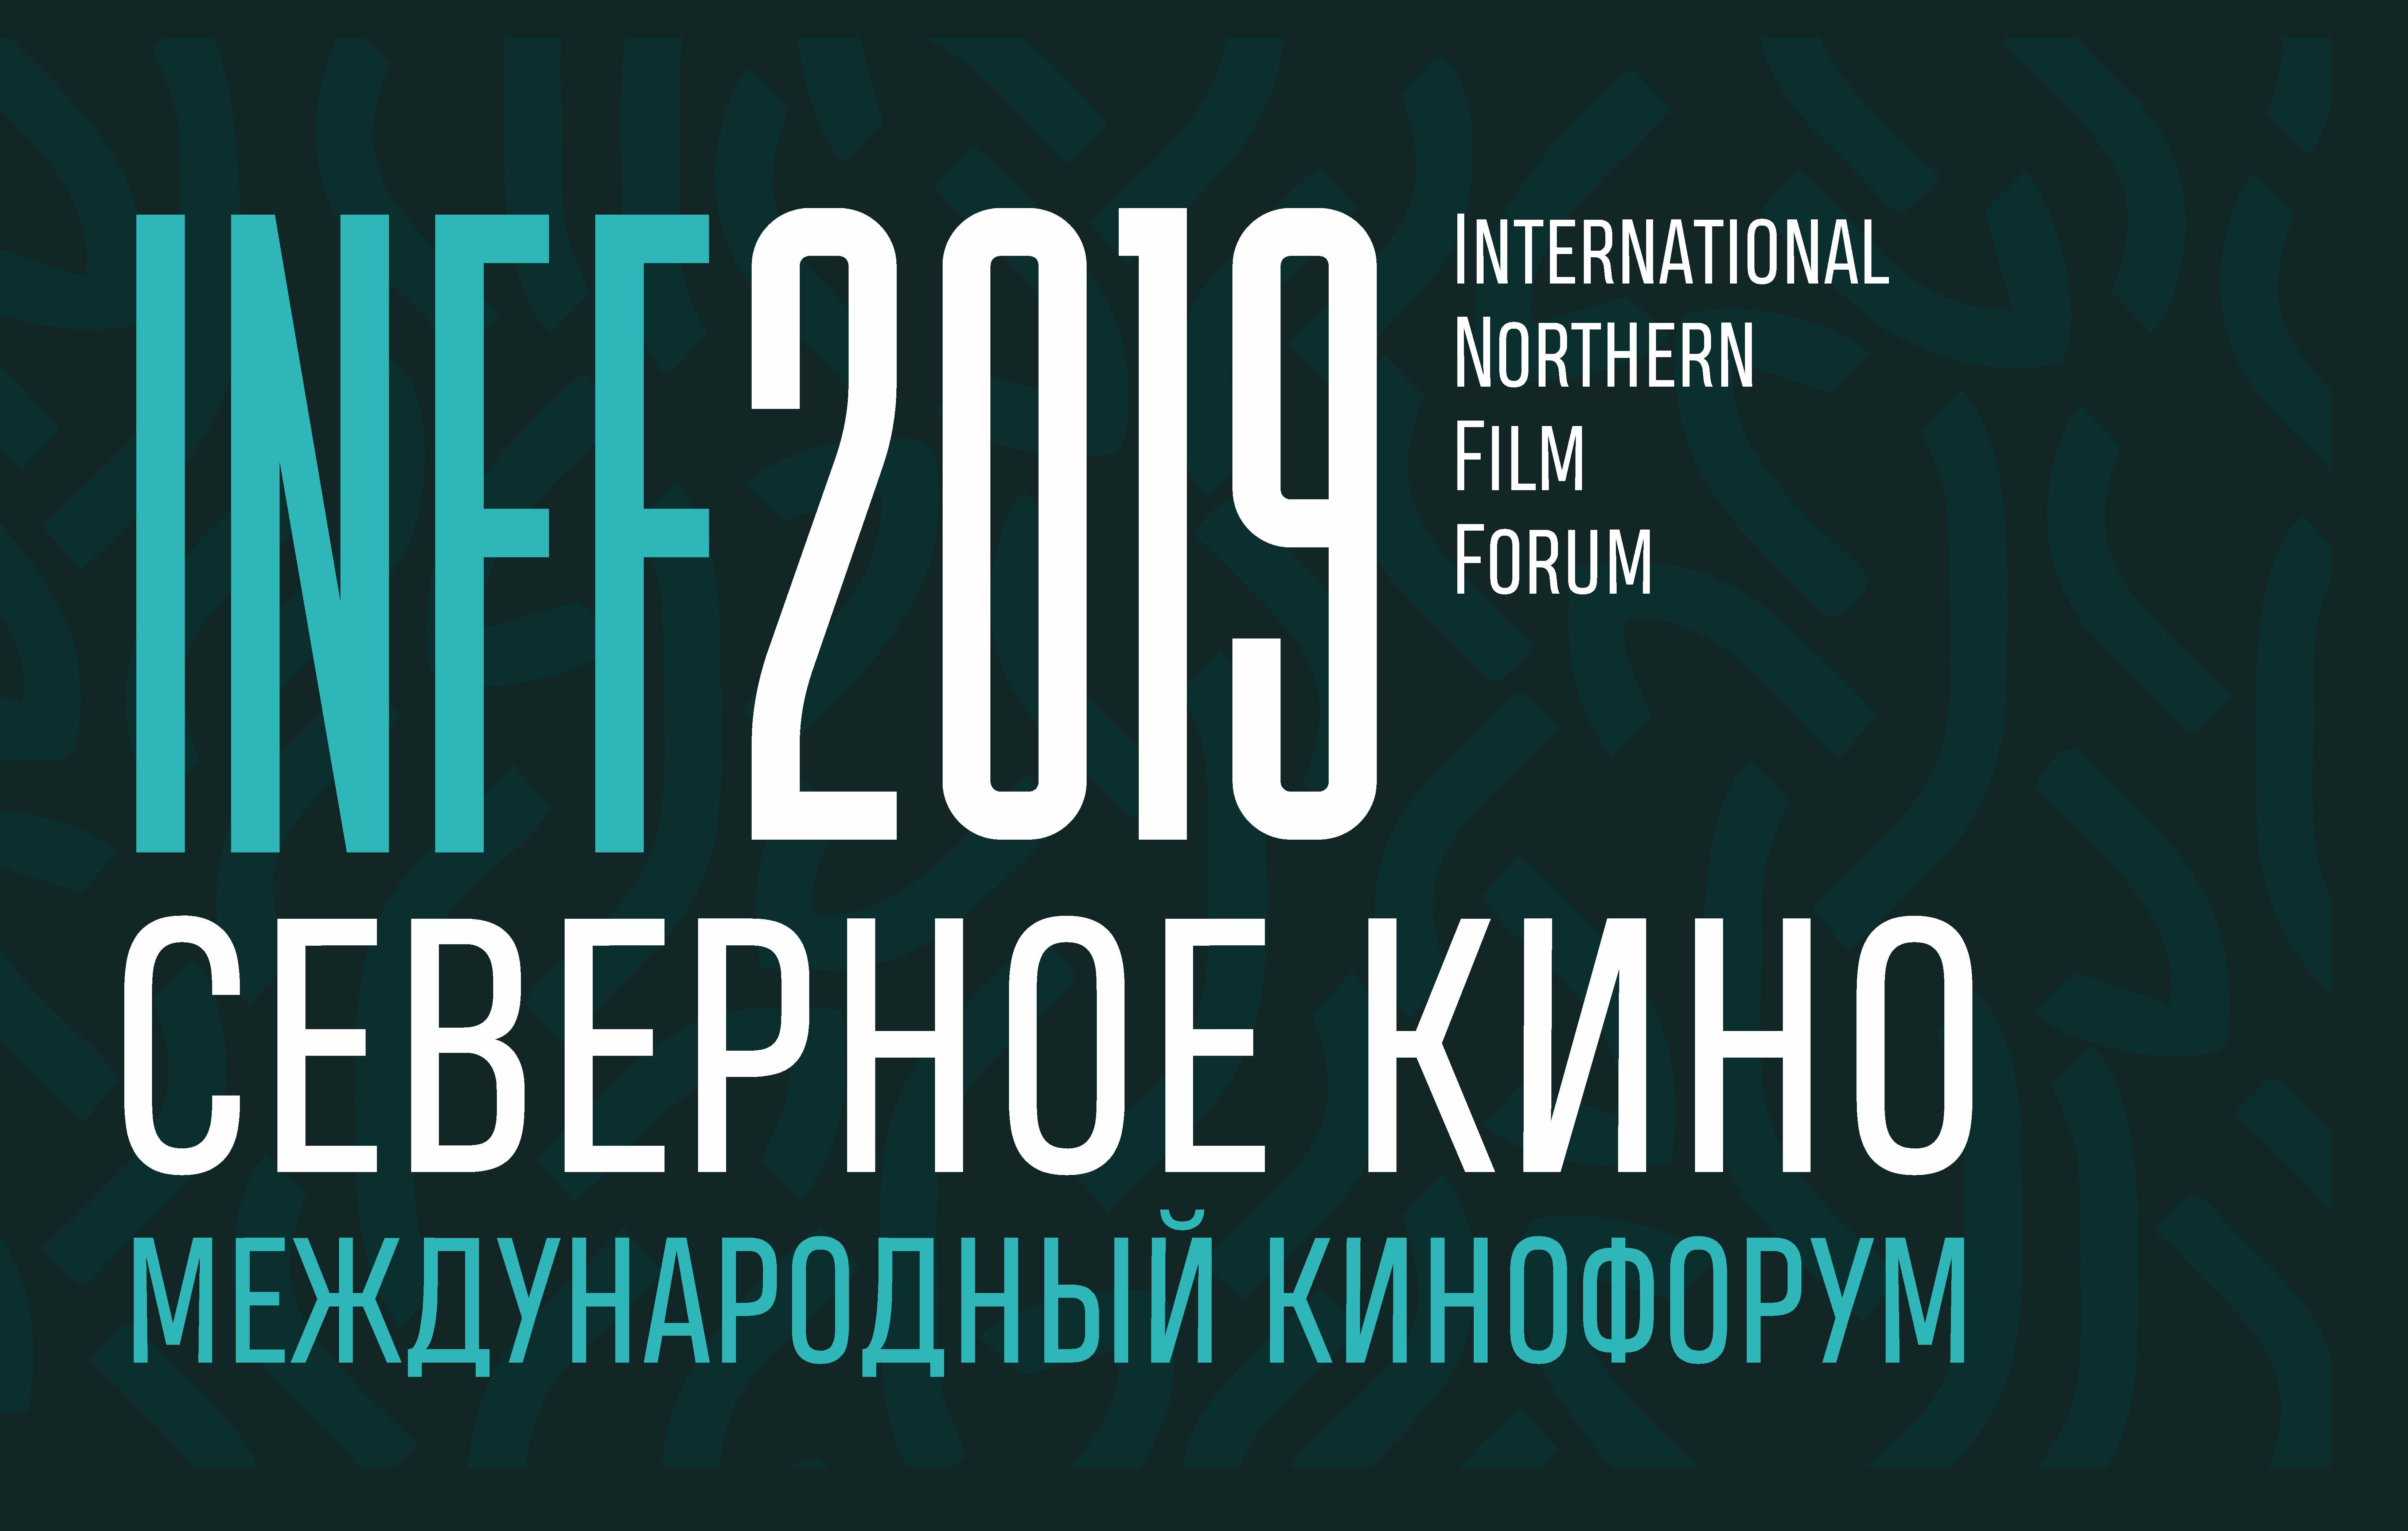 International Northern Film Forum “INFF 2019”